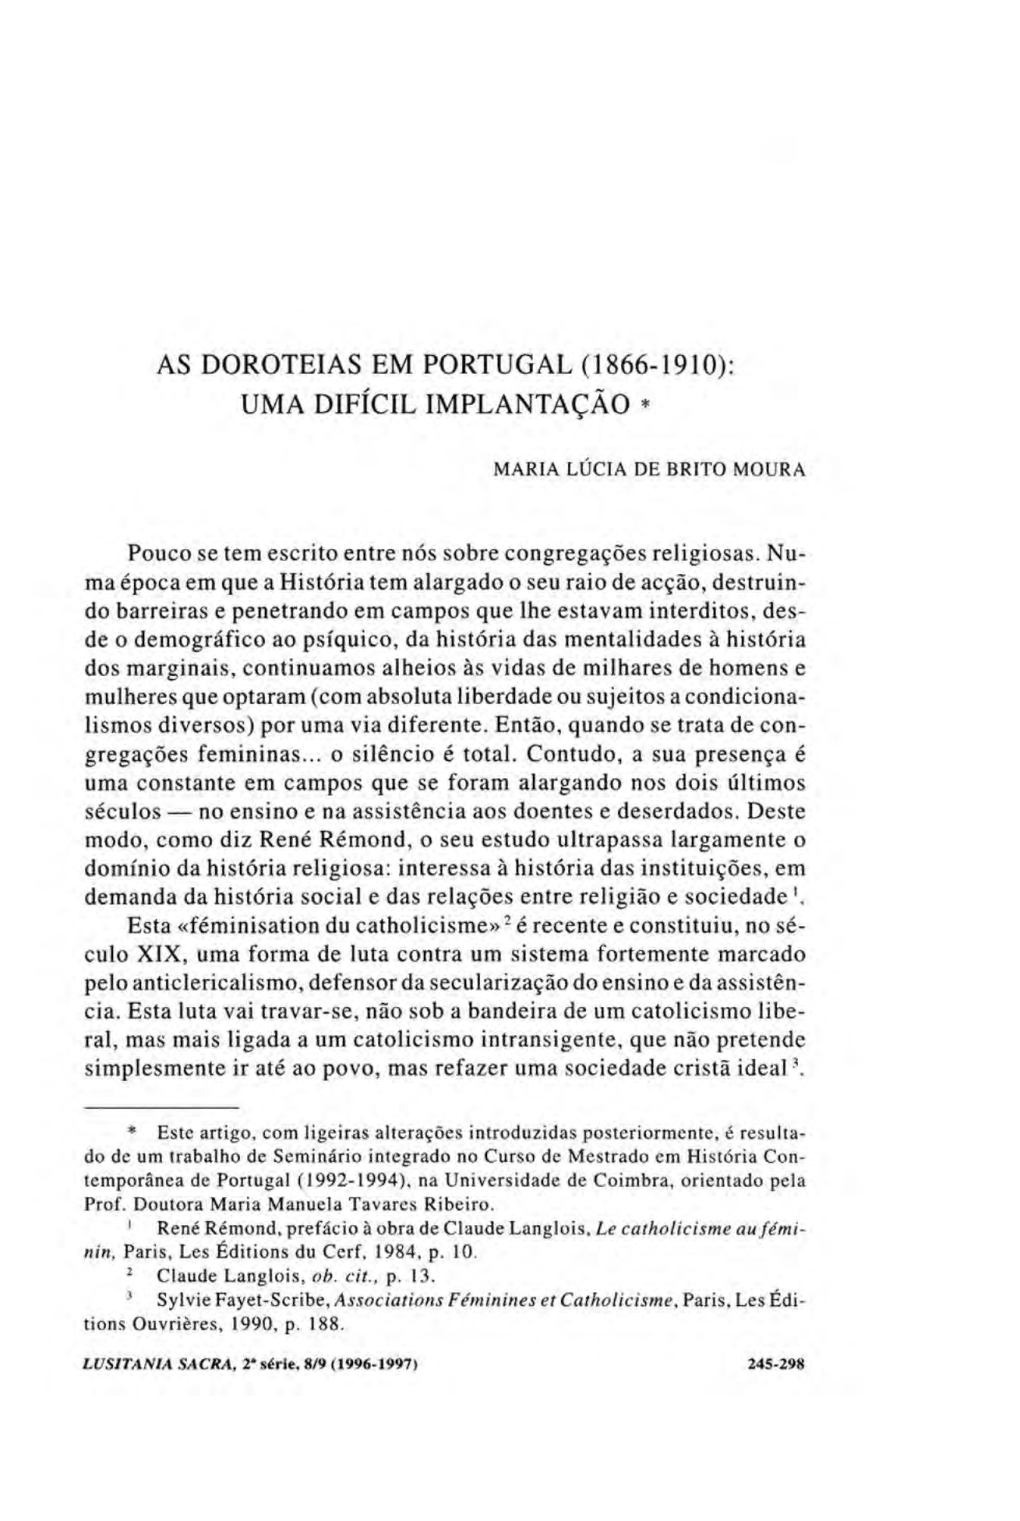 As Doroteias Em Portugal (1866-1910): Uma Difícil Implantação *